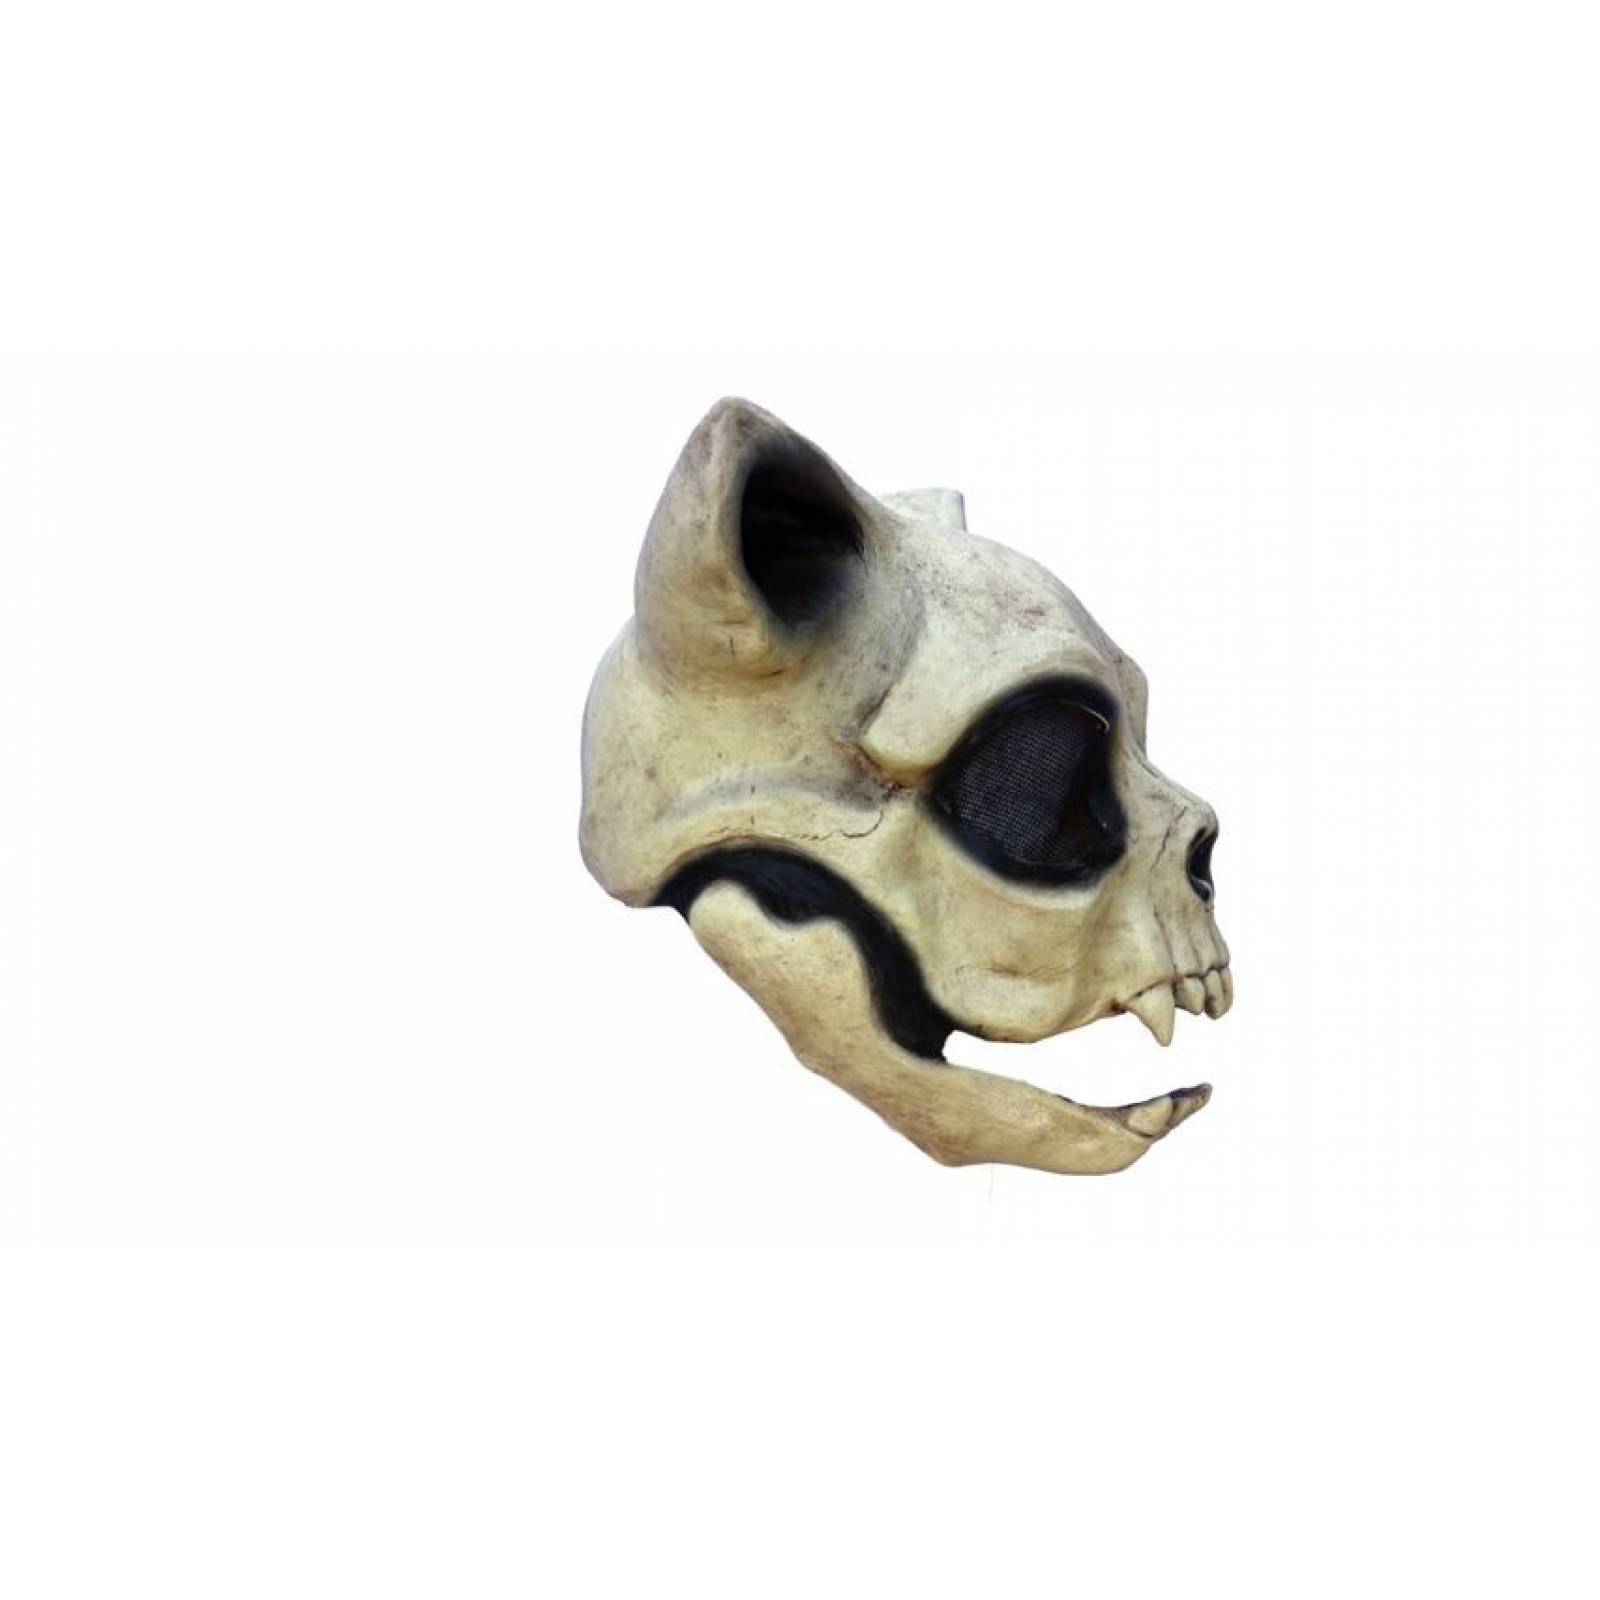 Máscara de latex de Cráneo de gato - Cat skull